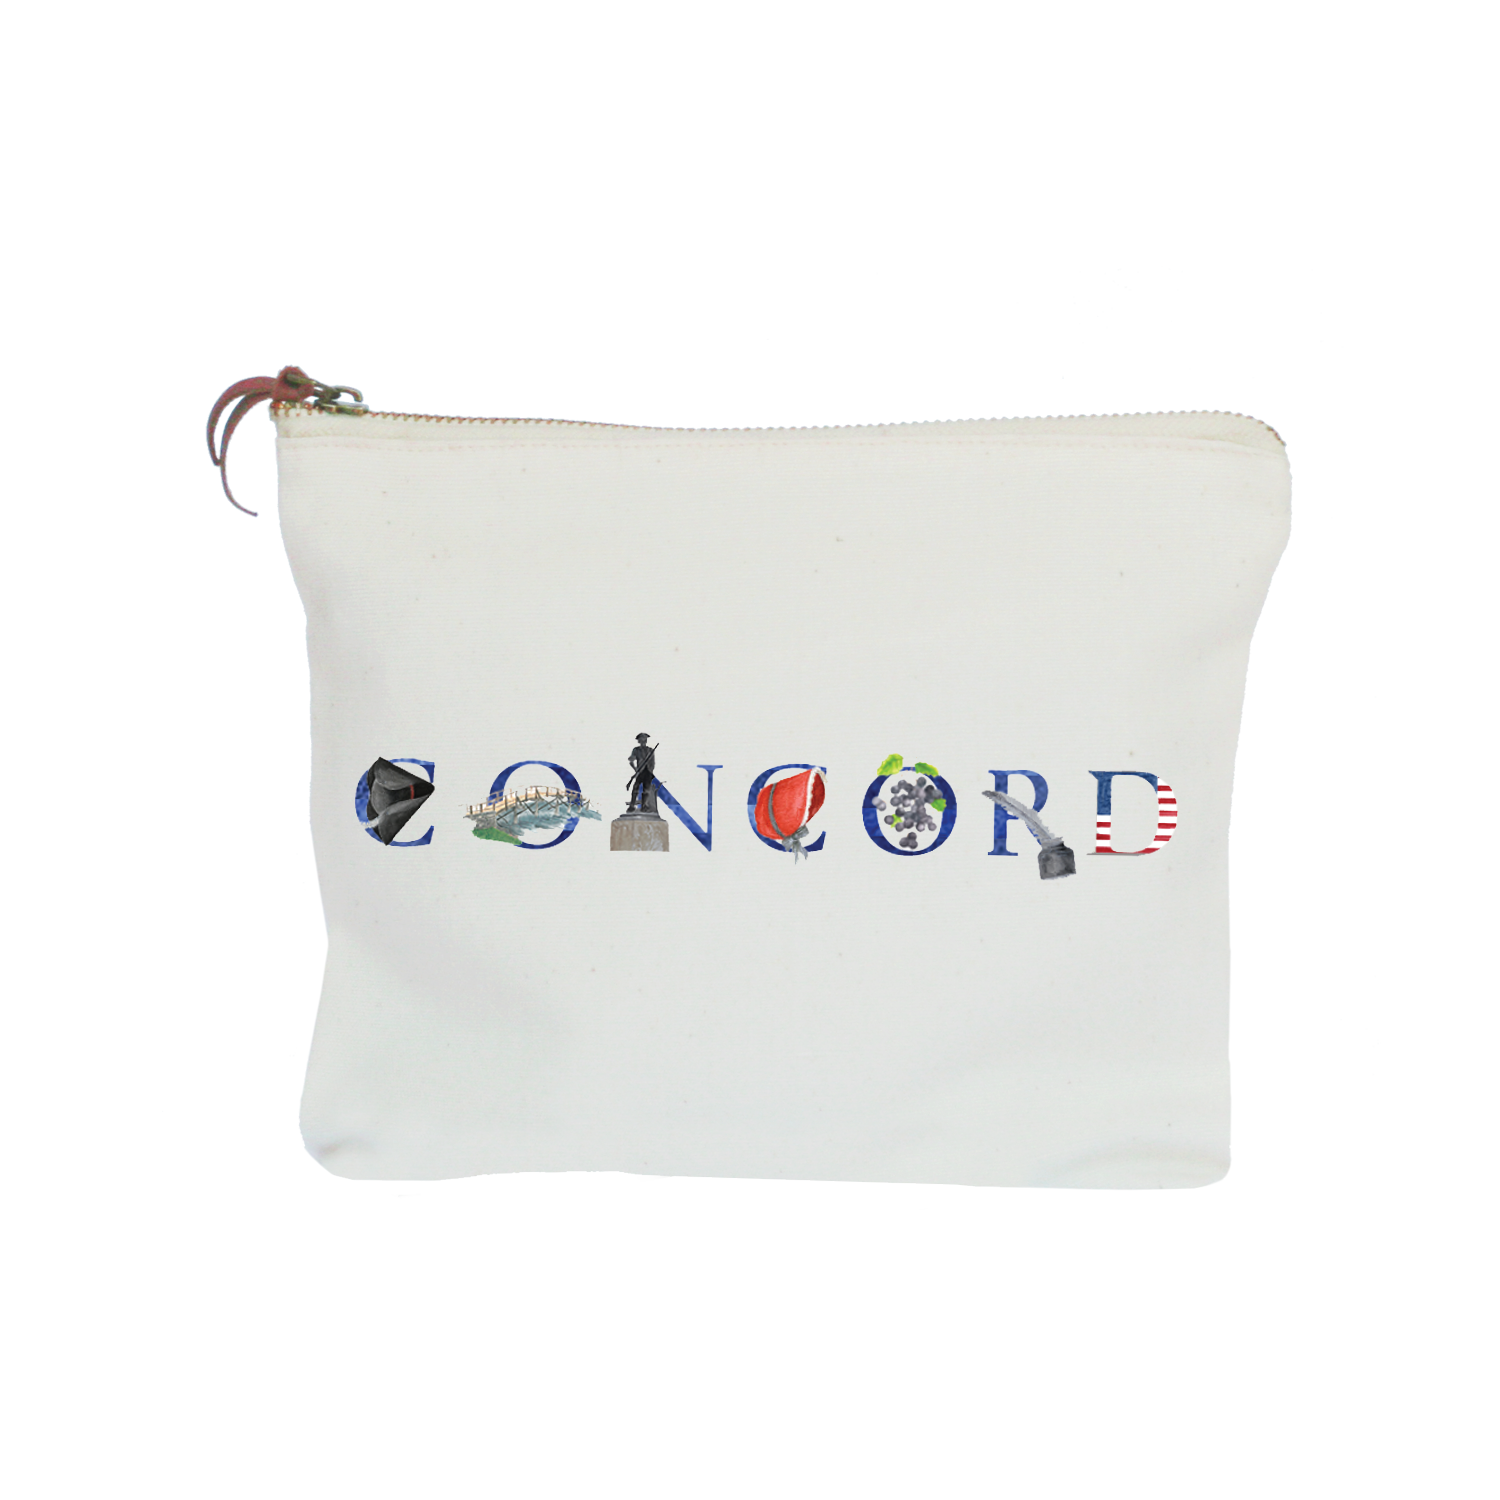 Concord zipper pouch